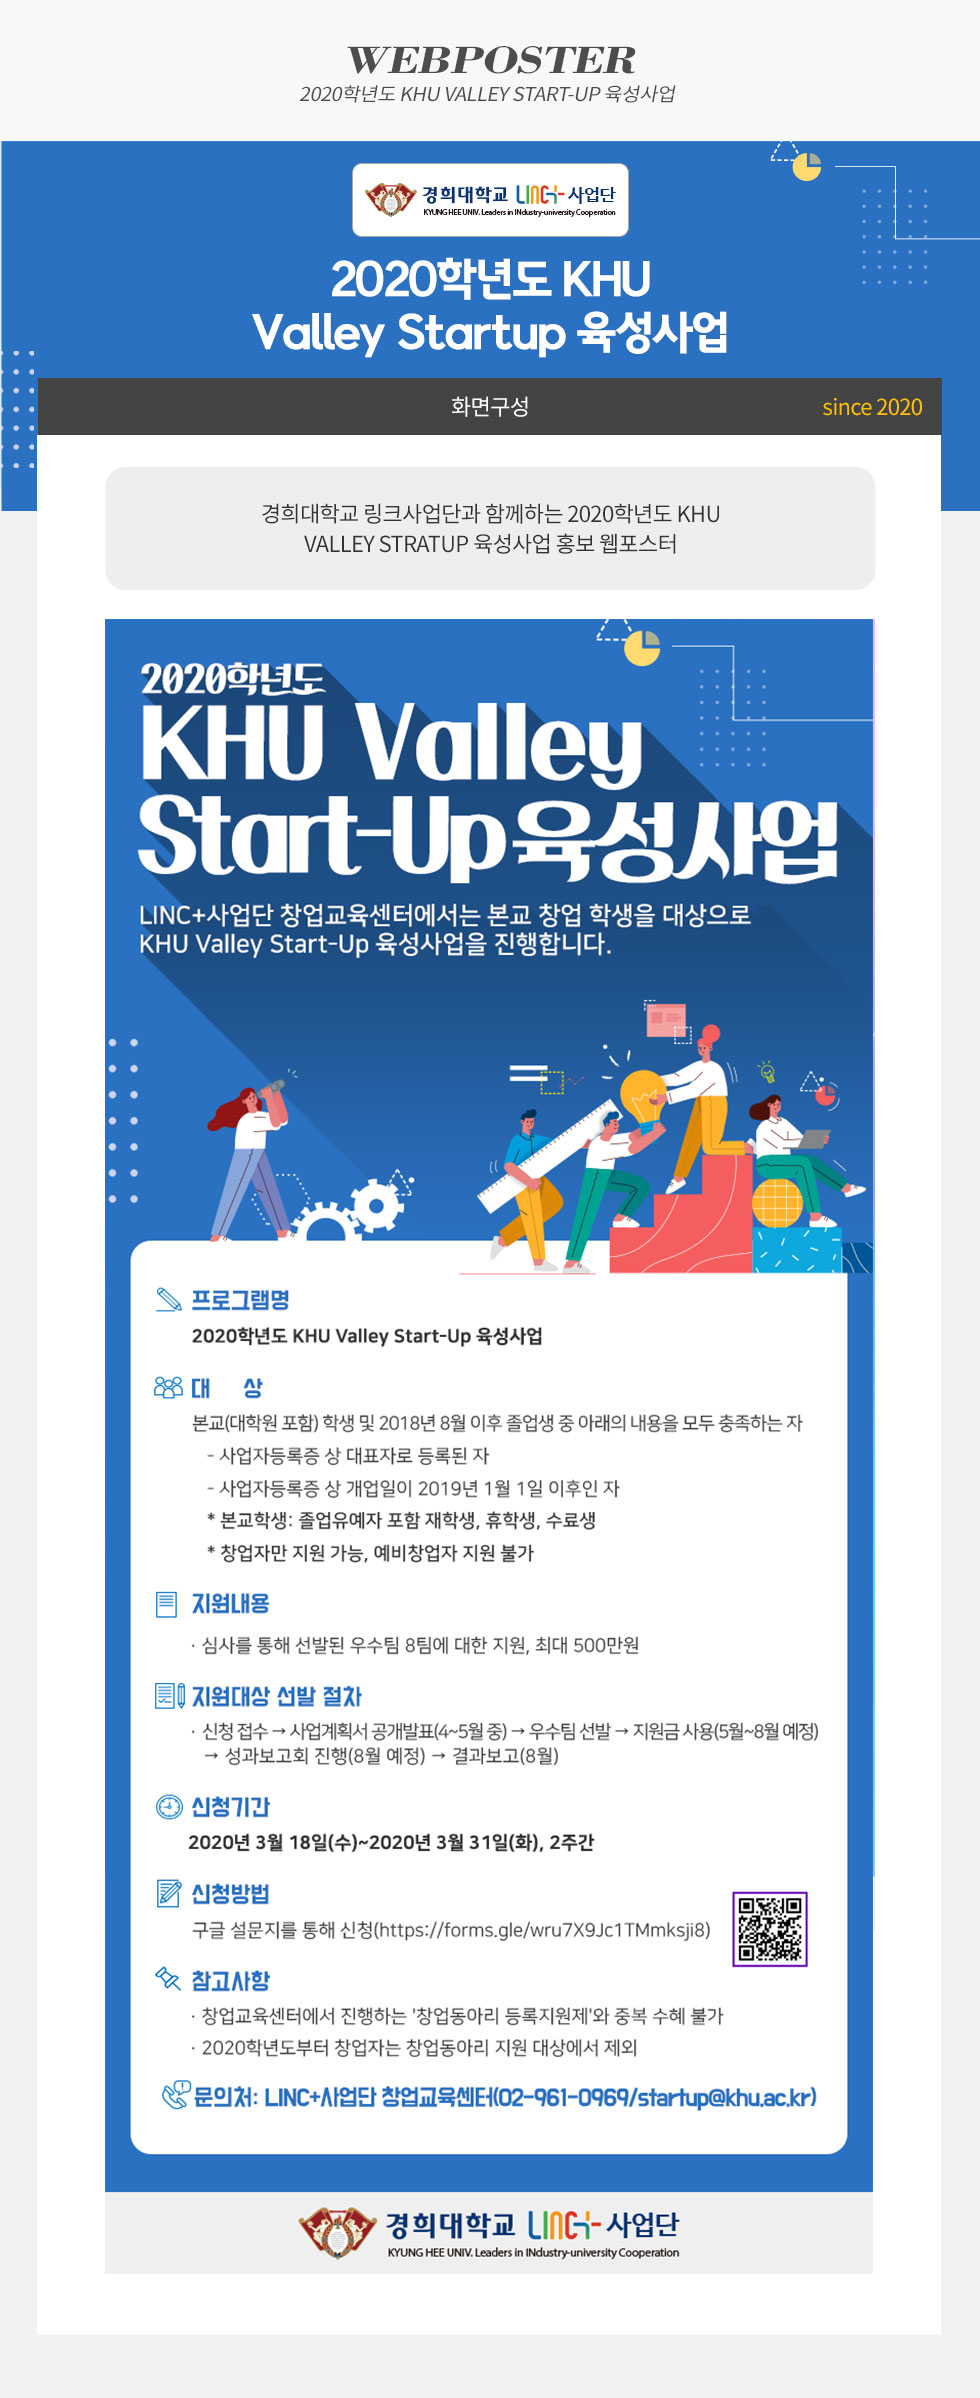 [디자인펌킨 | 2020학년도 KHU Valley Start-Up 육성사업] 경희대학교/링크사업단/육성사업/성과/창업/진로/육성/창업교육센터/웹포스터/웹자보/포토샵/일러스트/디자인/디자인펌킨 | 포트폴리오 상세이미지